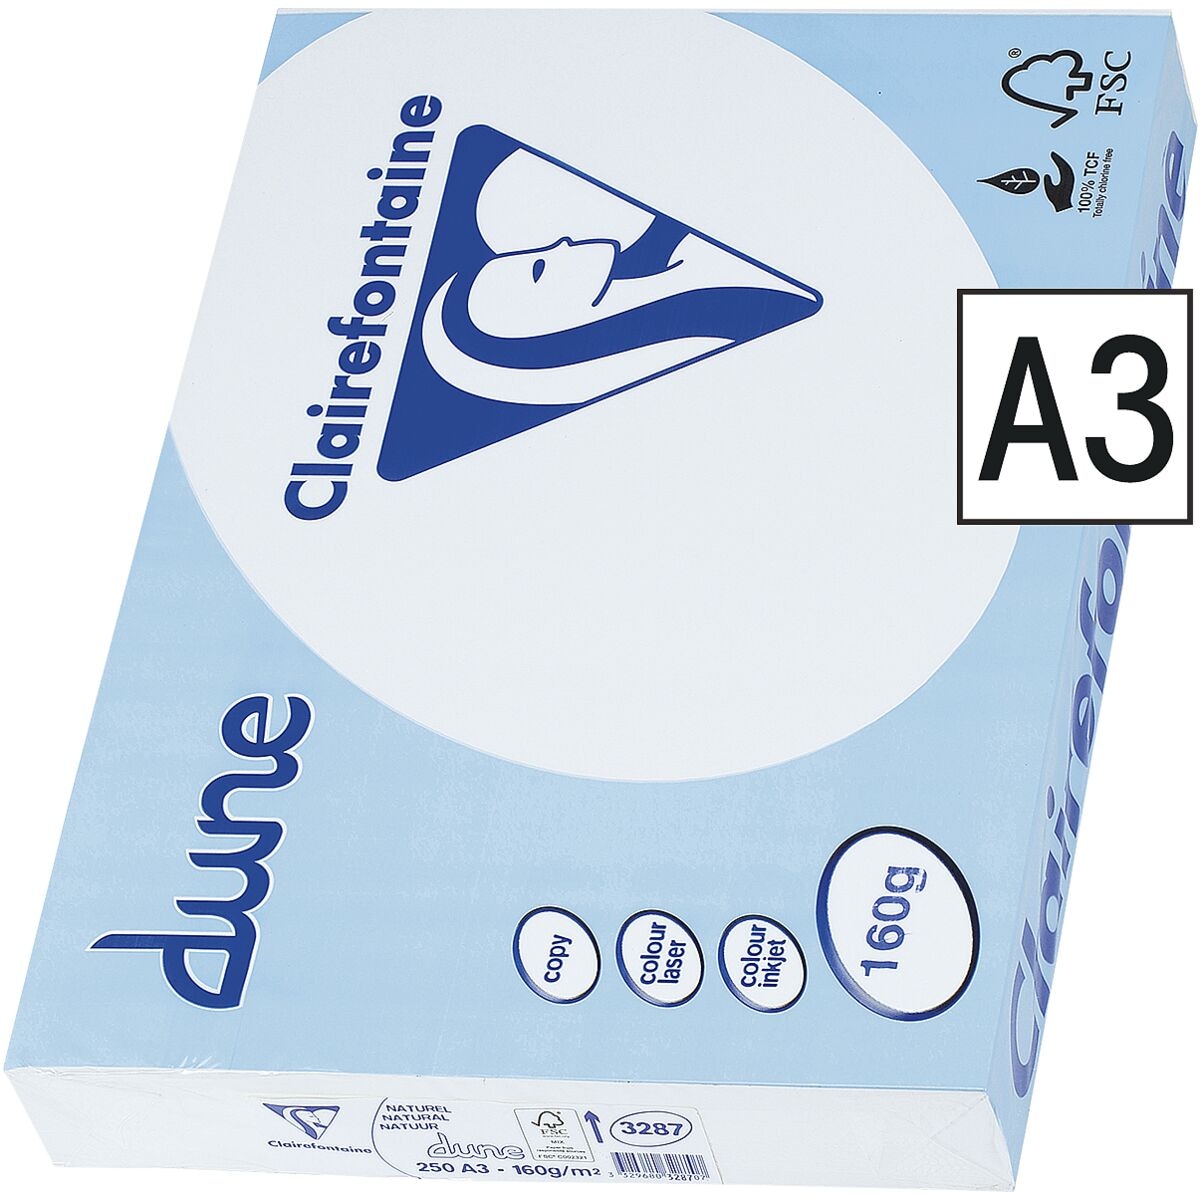 Multifunktionales Druckerpapier A3 Clairefontaine Dune - 250 Blatt gesamt